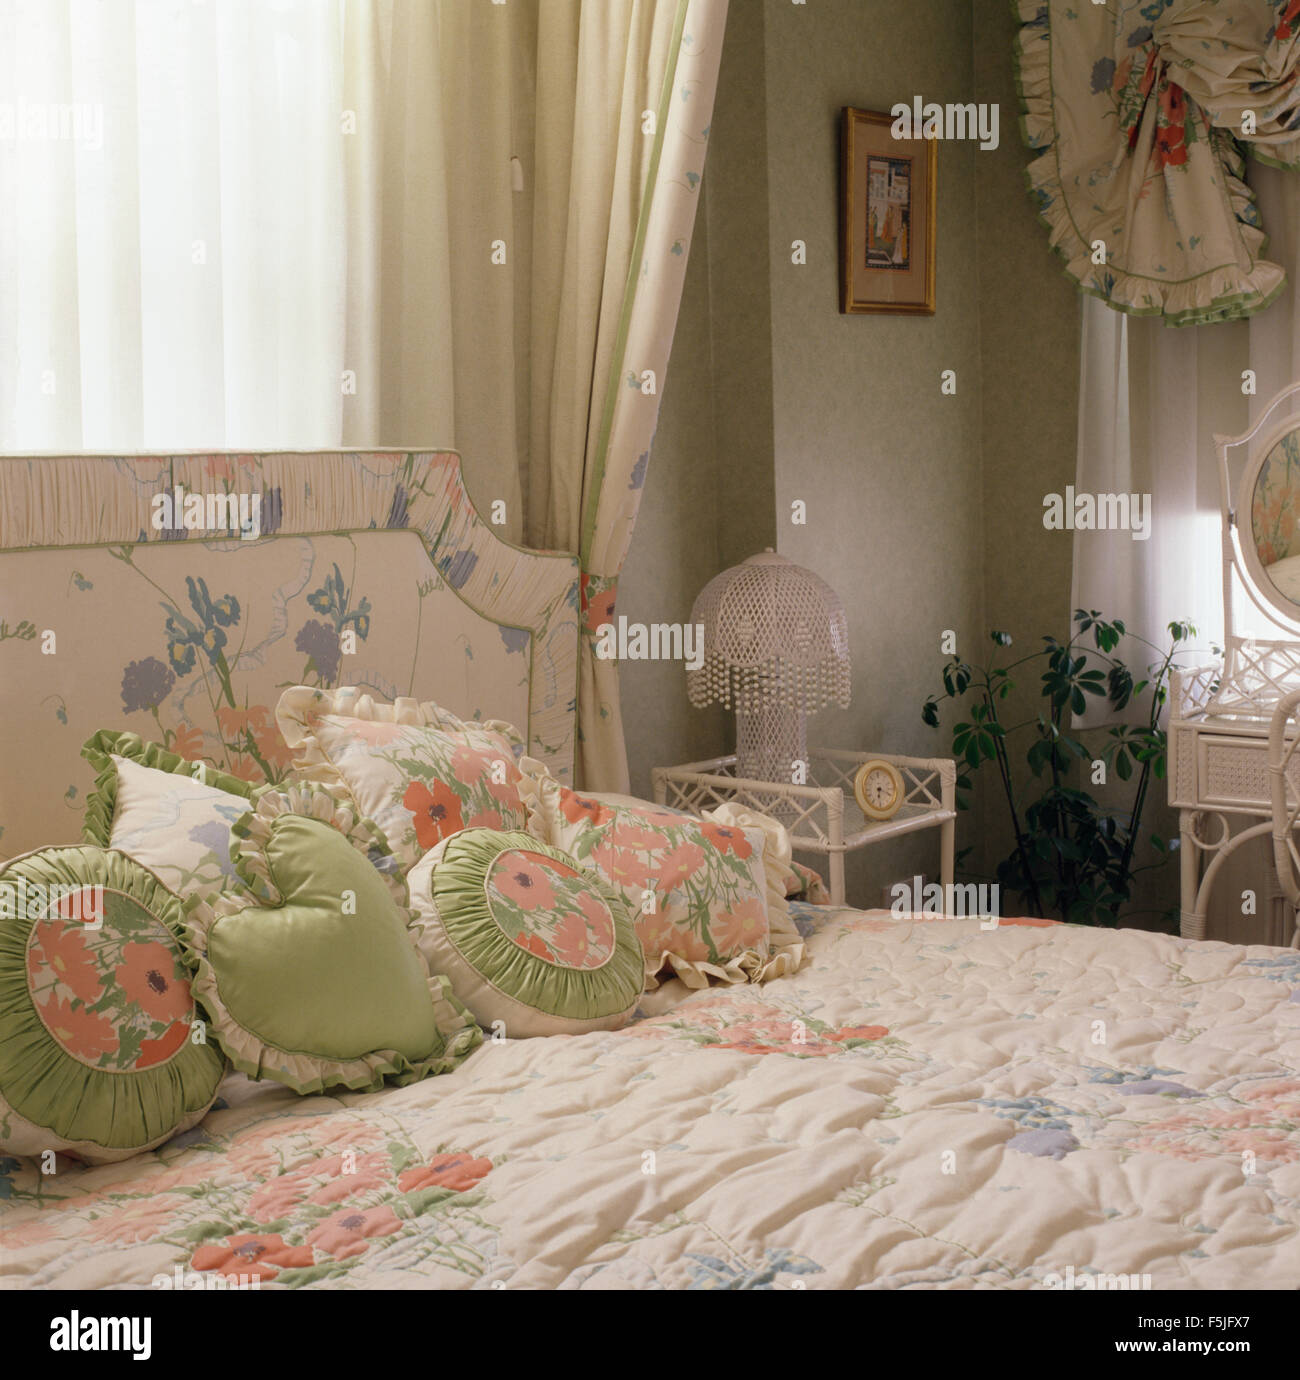 Cuscini verdi sul letto immagini e fotografie stock ad alta risoluzione -  Alamy